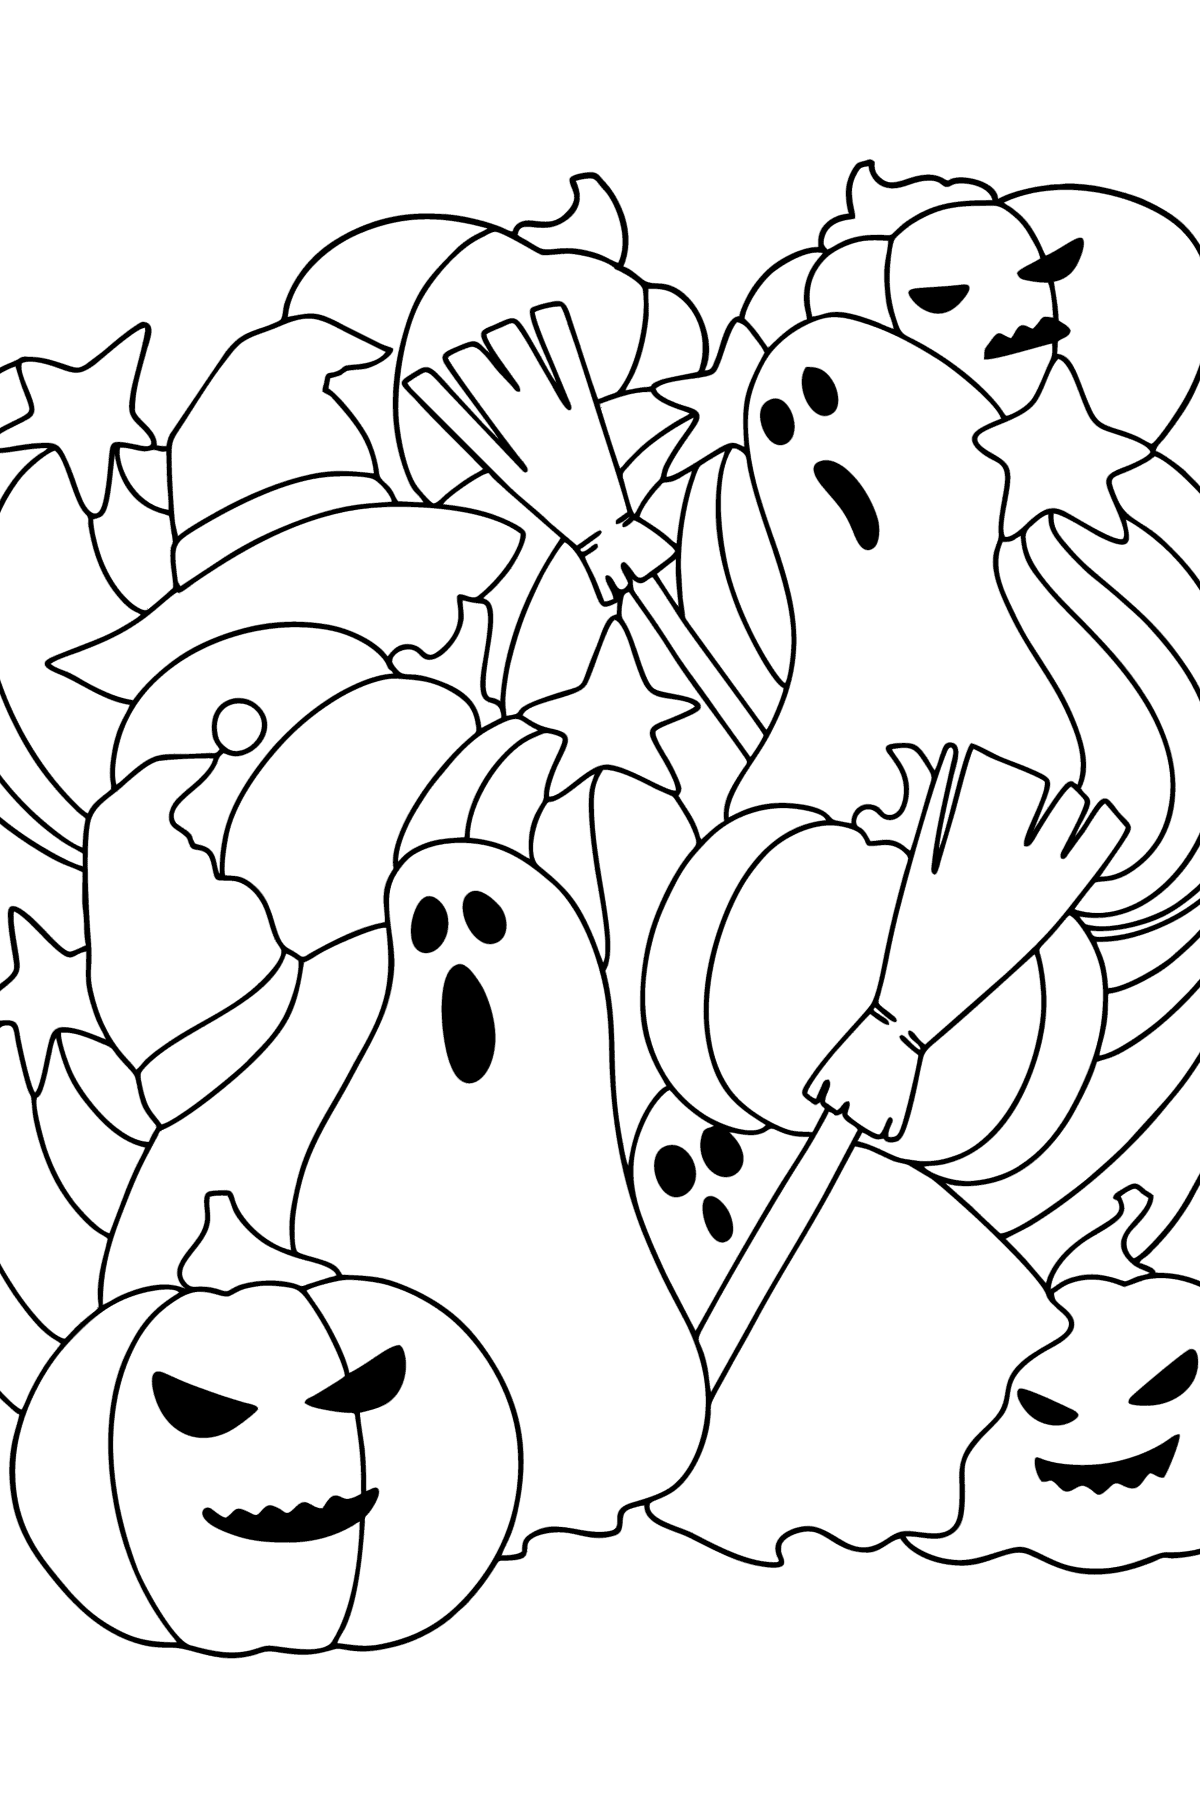 Dibujo para colorear Doodle para niños - Halloween - Dibujos para Colorear para Niños